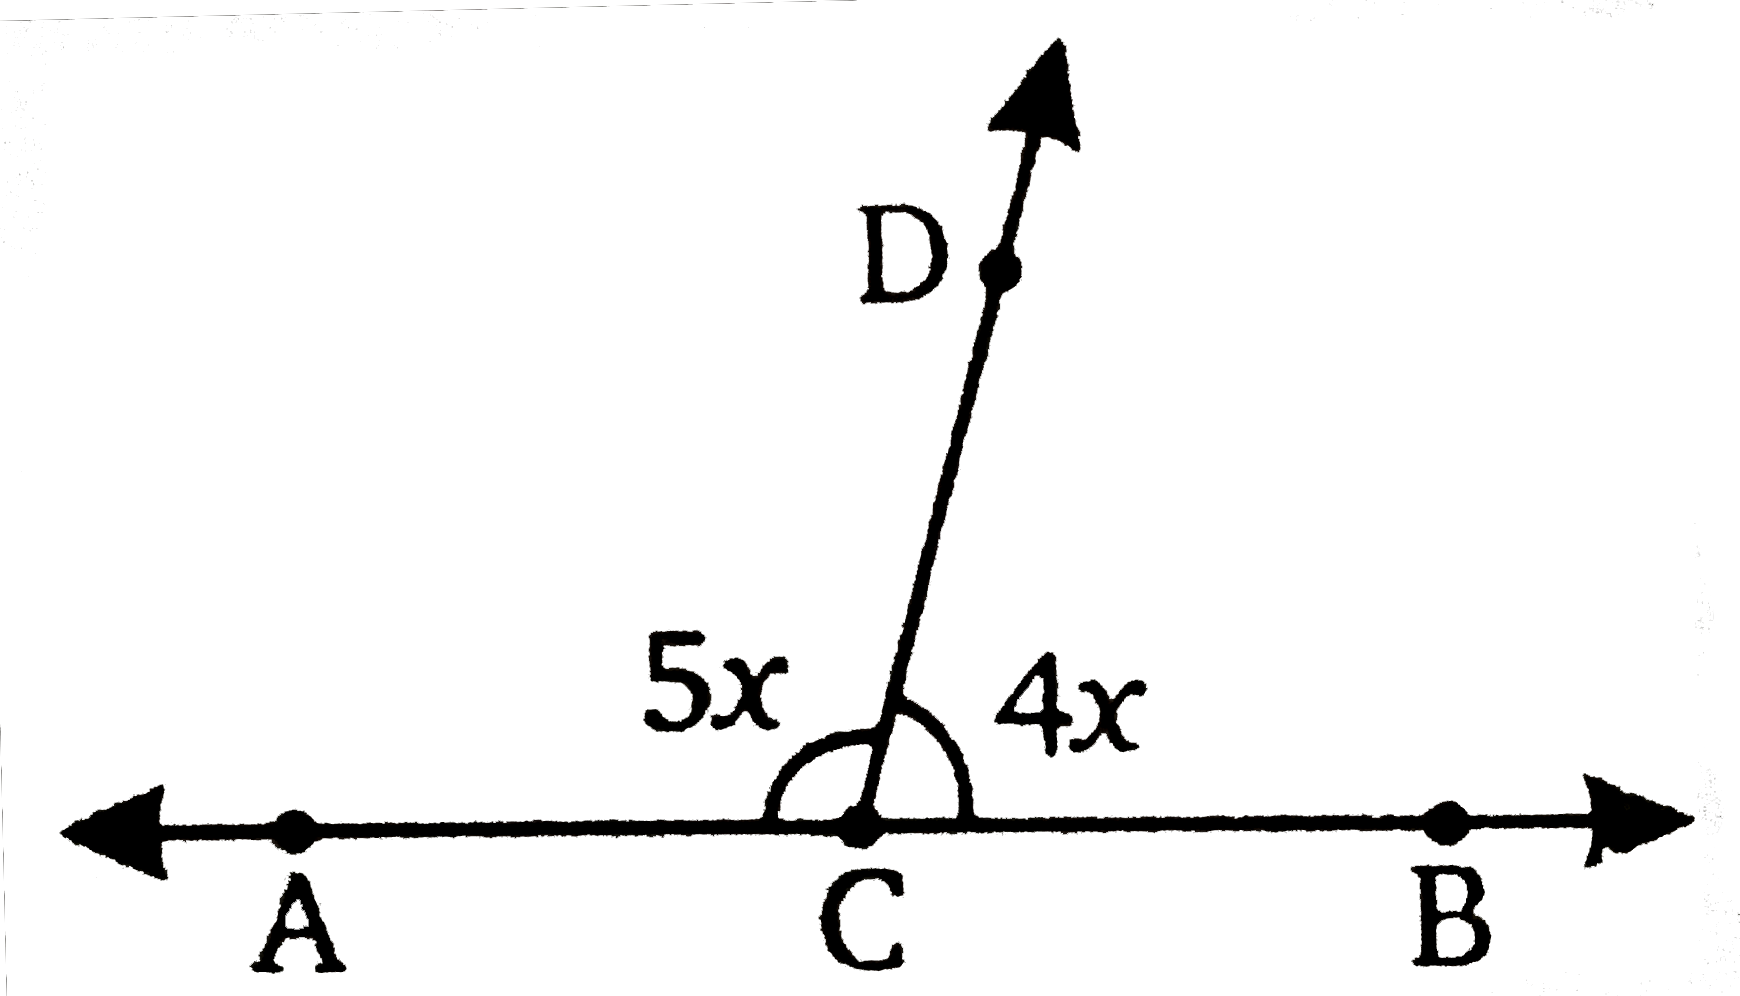 चित्र में, ABC एक रेखा इस प्रकार है की angleDCA=5x और angleDCB=4x,x का मान ज्ञात कीजिए तथा angleDCB और angleDCA ज्ञात कीजिए |